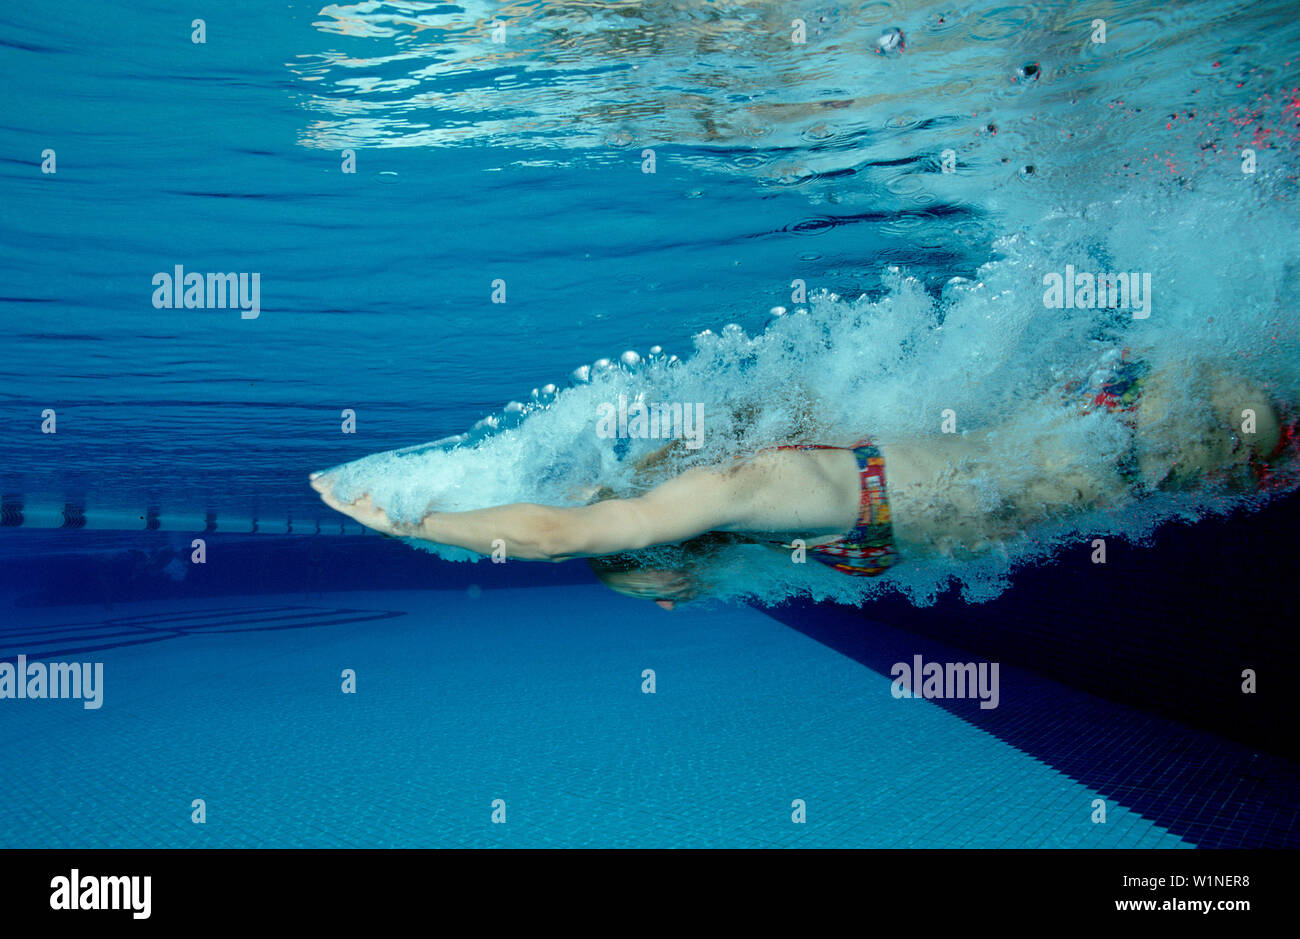 Frau springt in Schwimmbecken, Donna salti a nuotare, donna salta in piscina Foto Stock